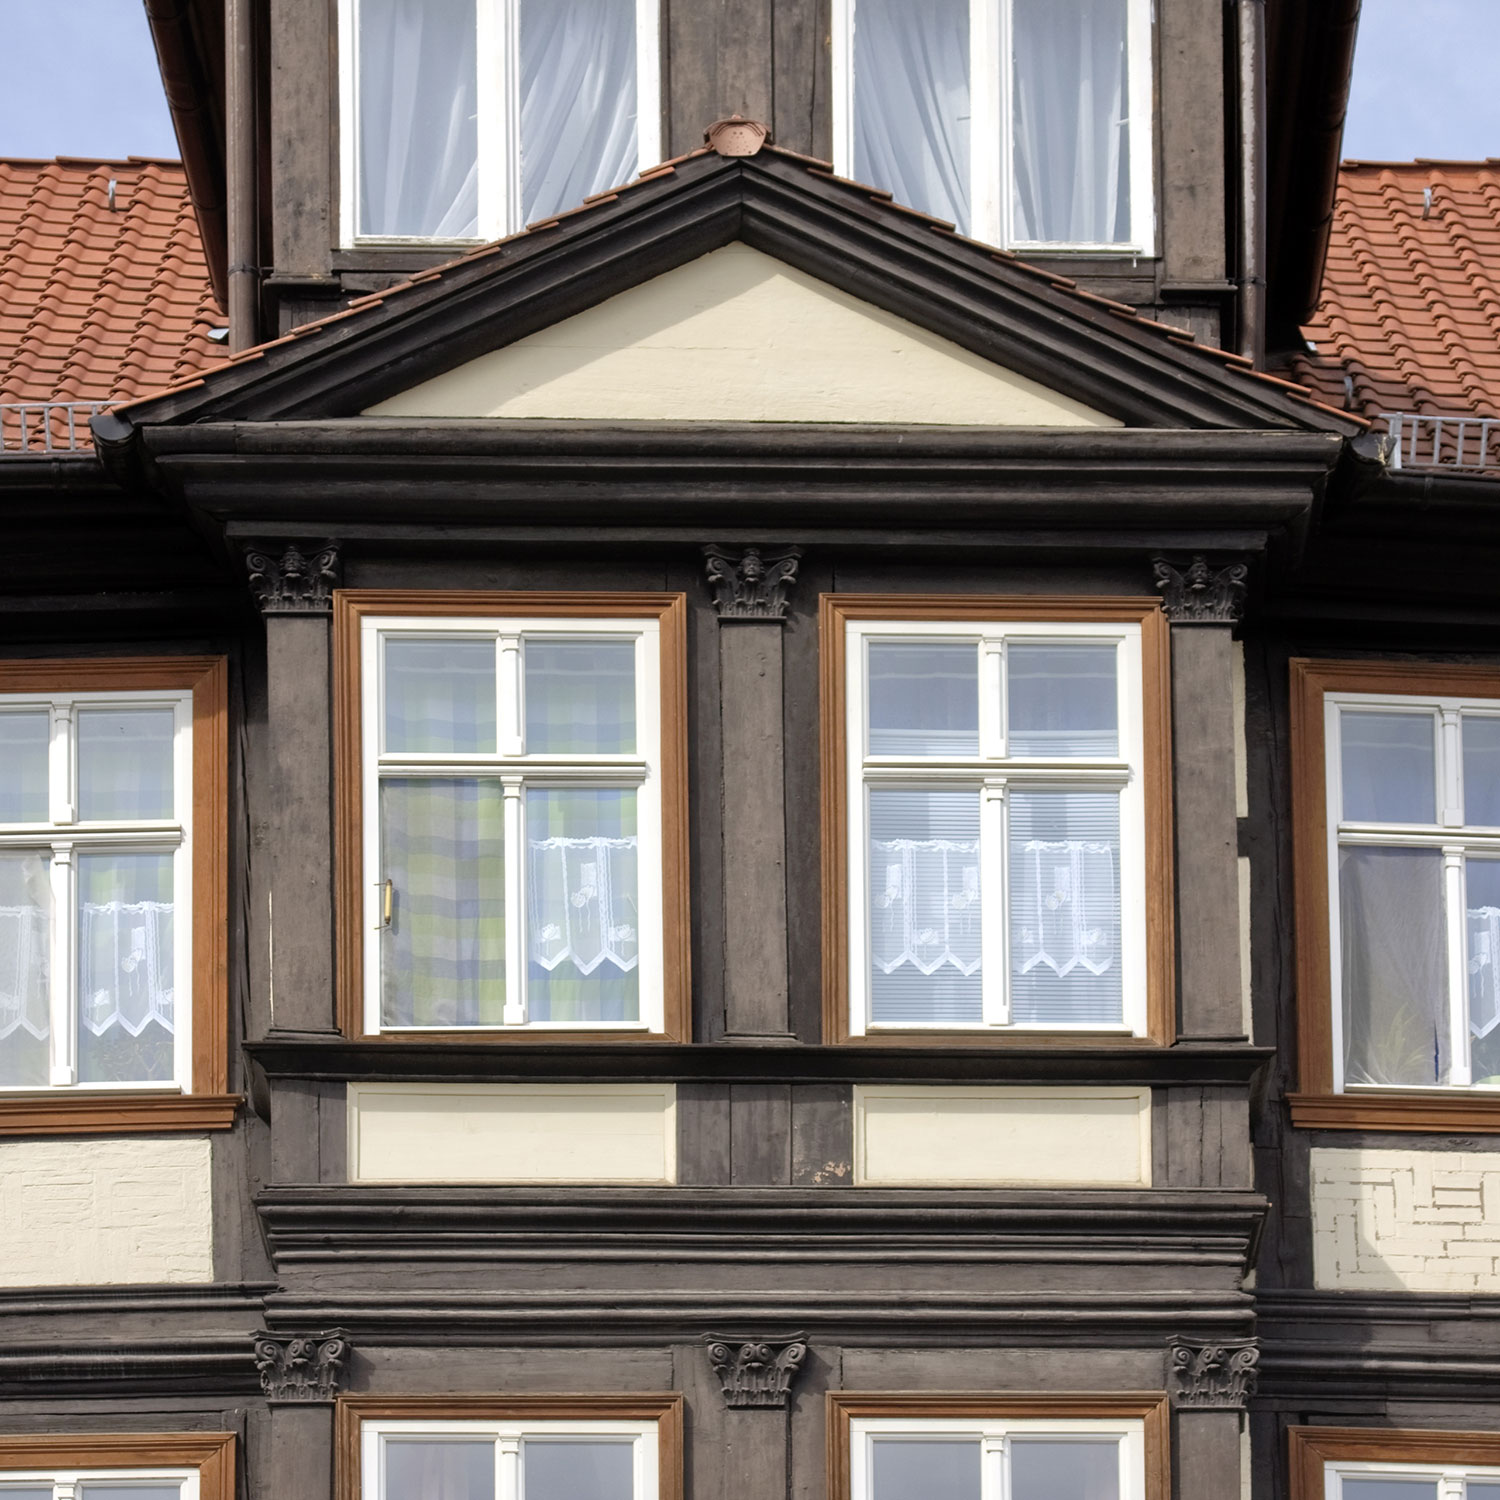 Erker des klassizistischen Fachwerkhaus in der Marktstraße 11 in Quedlinburg mit profilierten Säulen und Giebel.